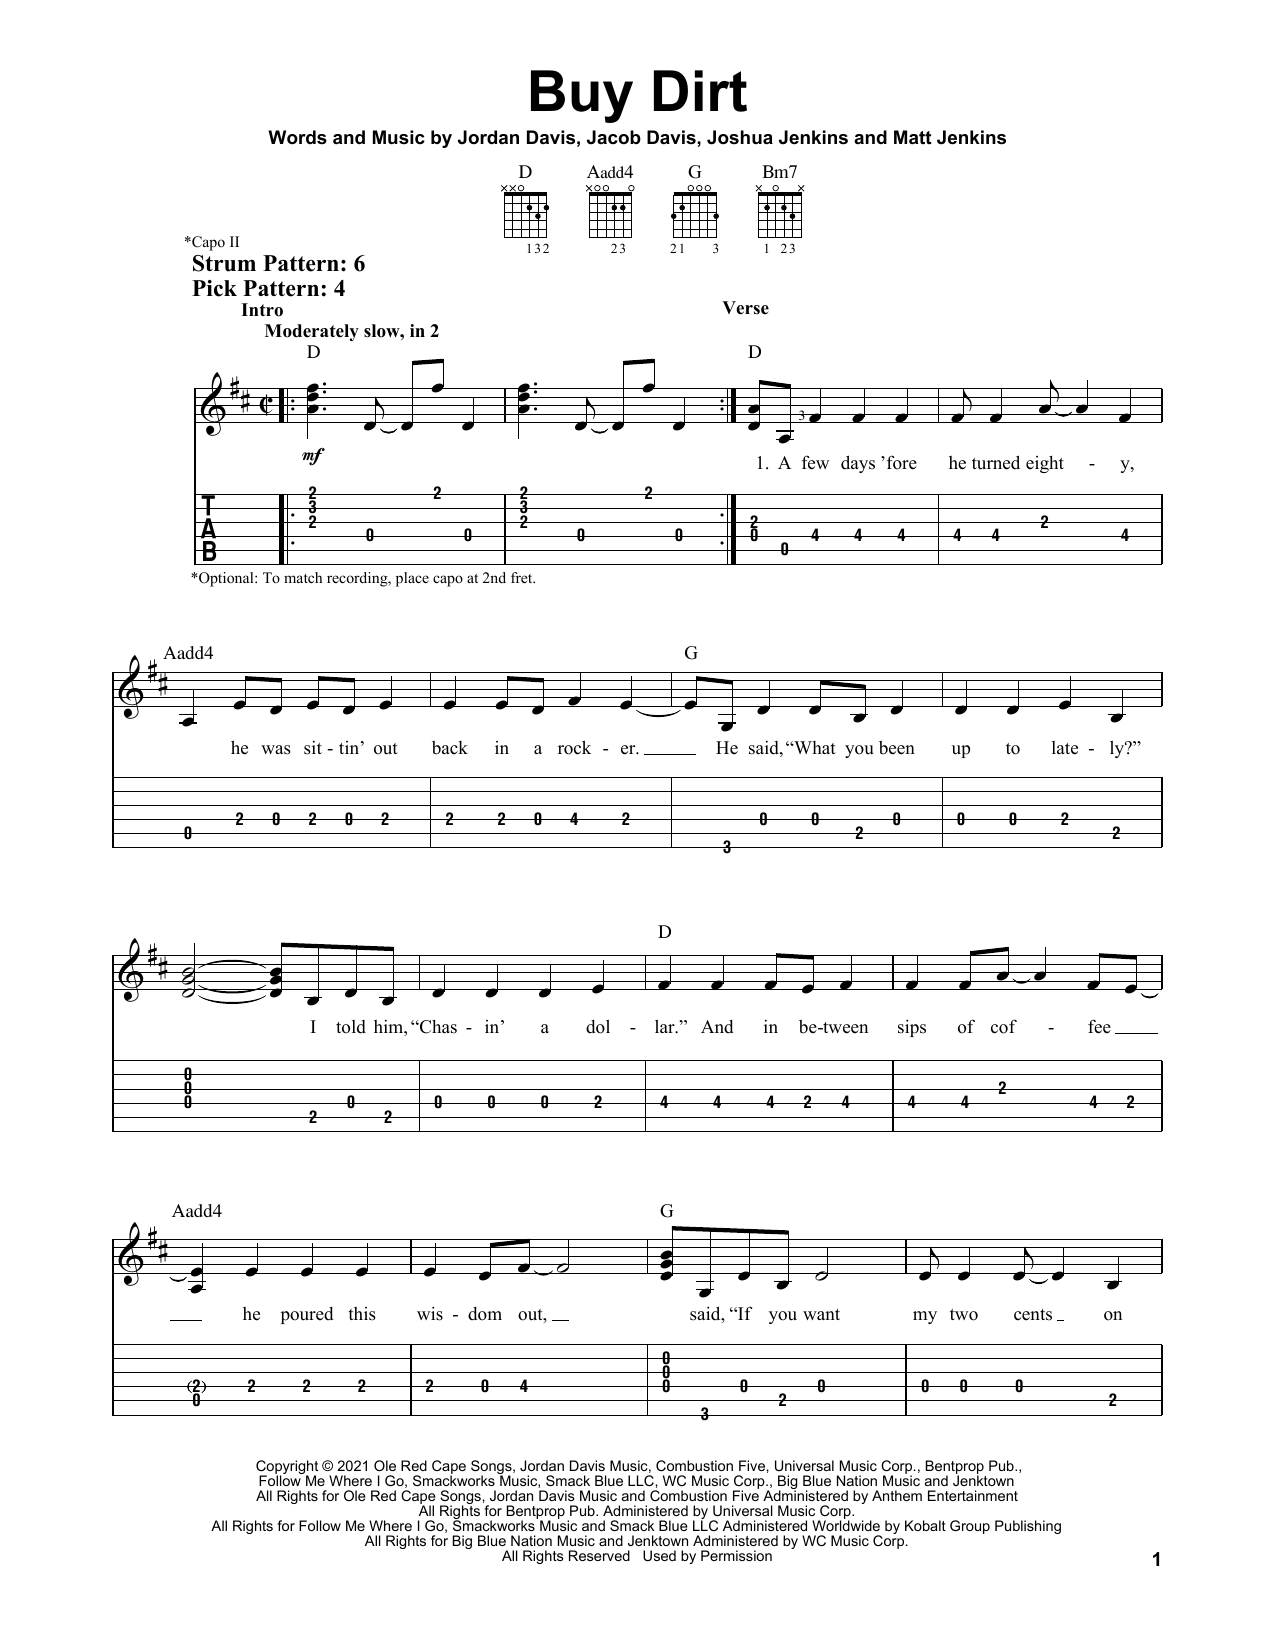 Jordan Davis and Luke Bryan Buy Dirt Sheet Music Notes & Chords for Easy Guitar Tab - Download or Print PDF